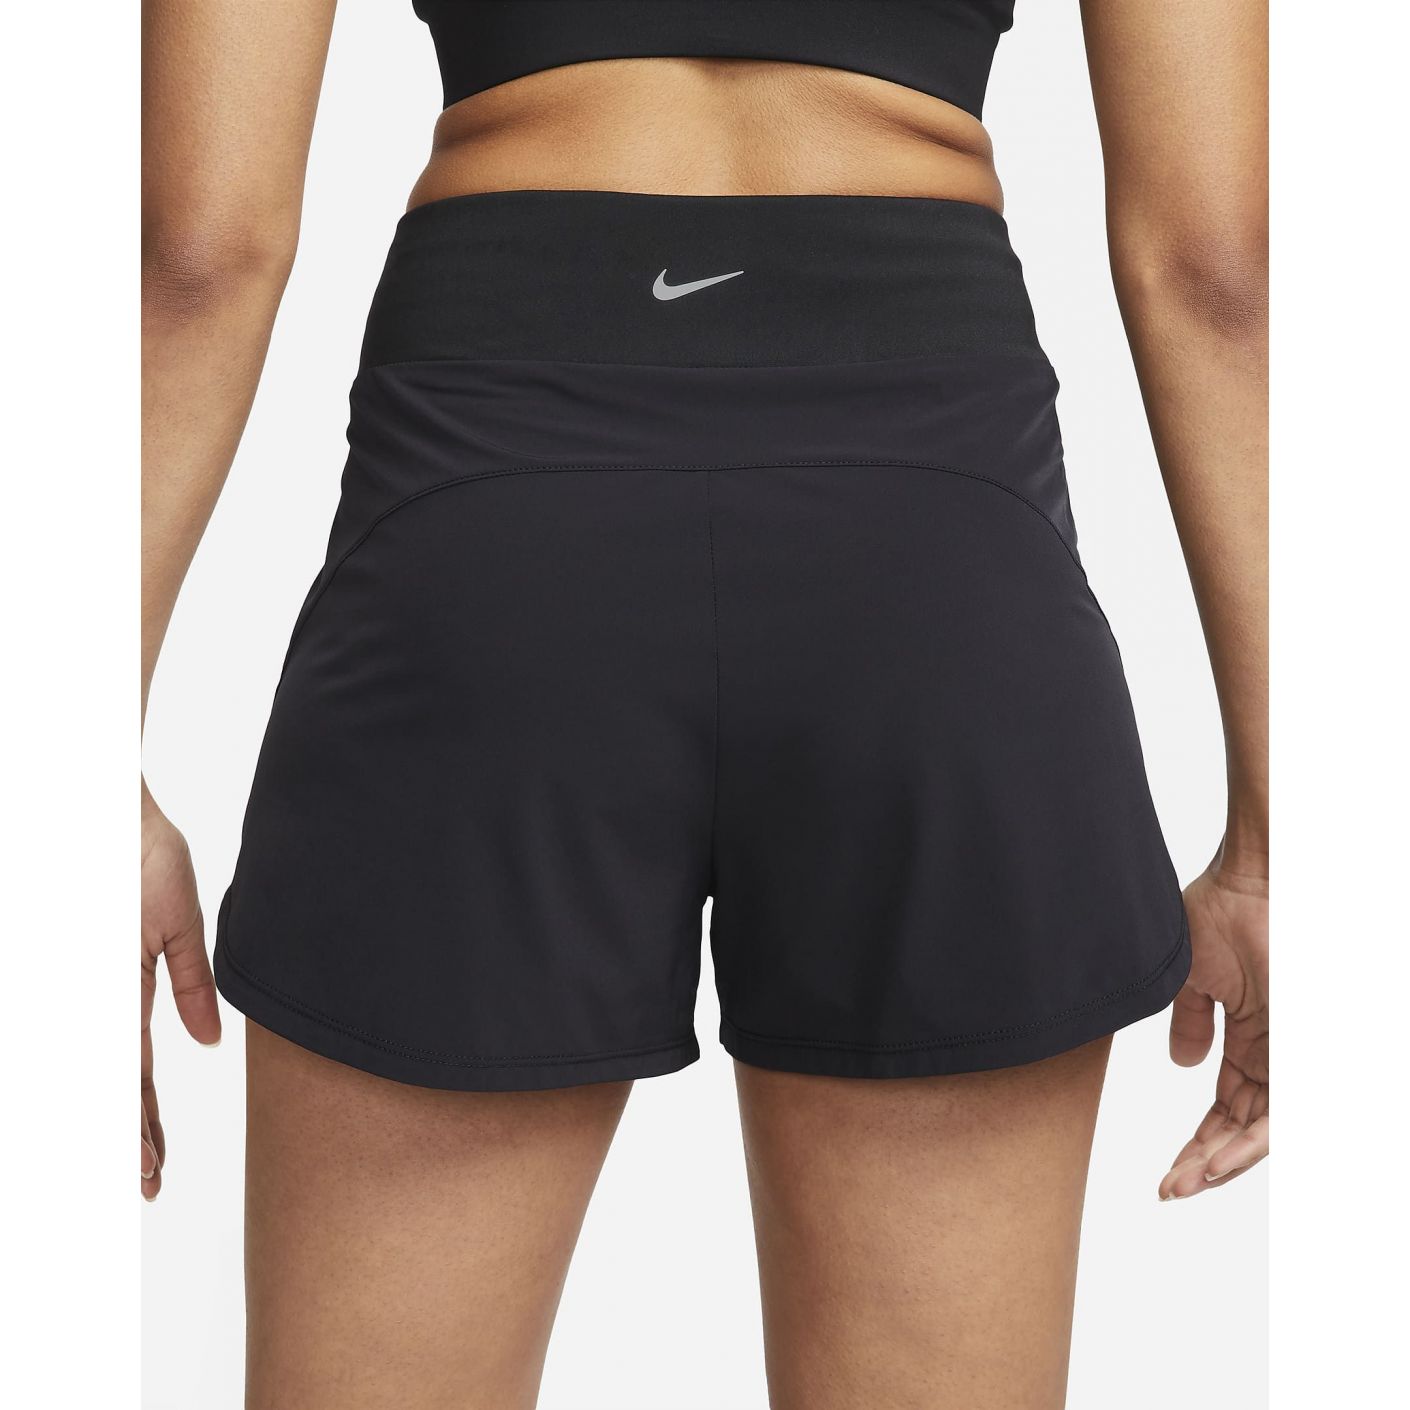 Nike Short Bliss Dri-Fit High Waist Black for Women